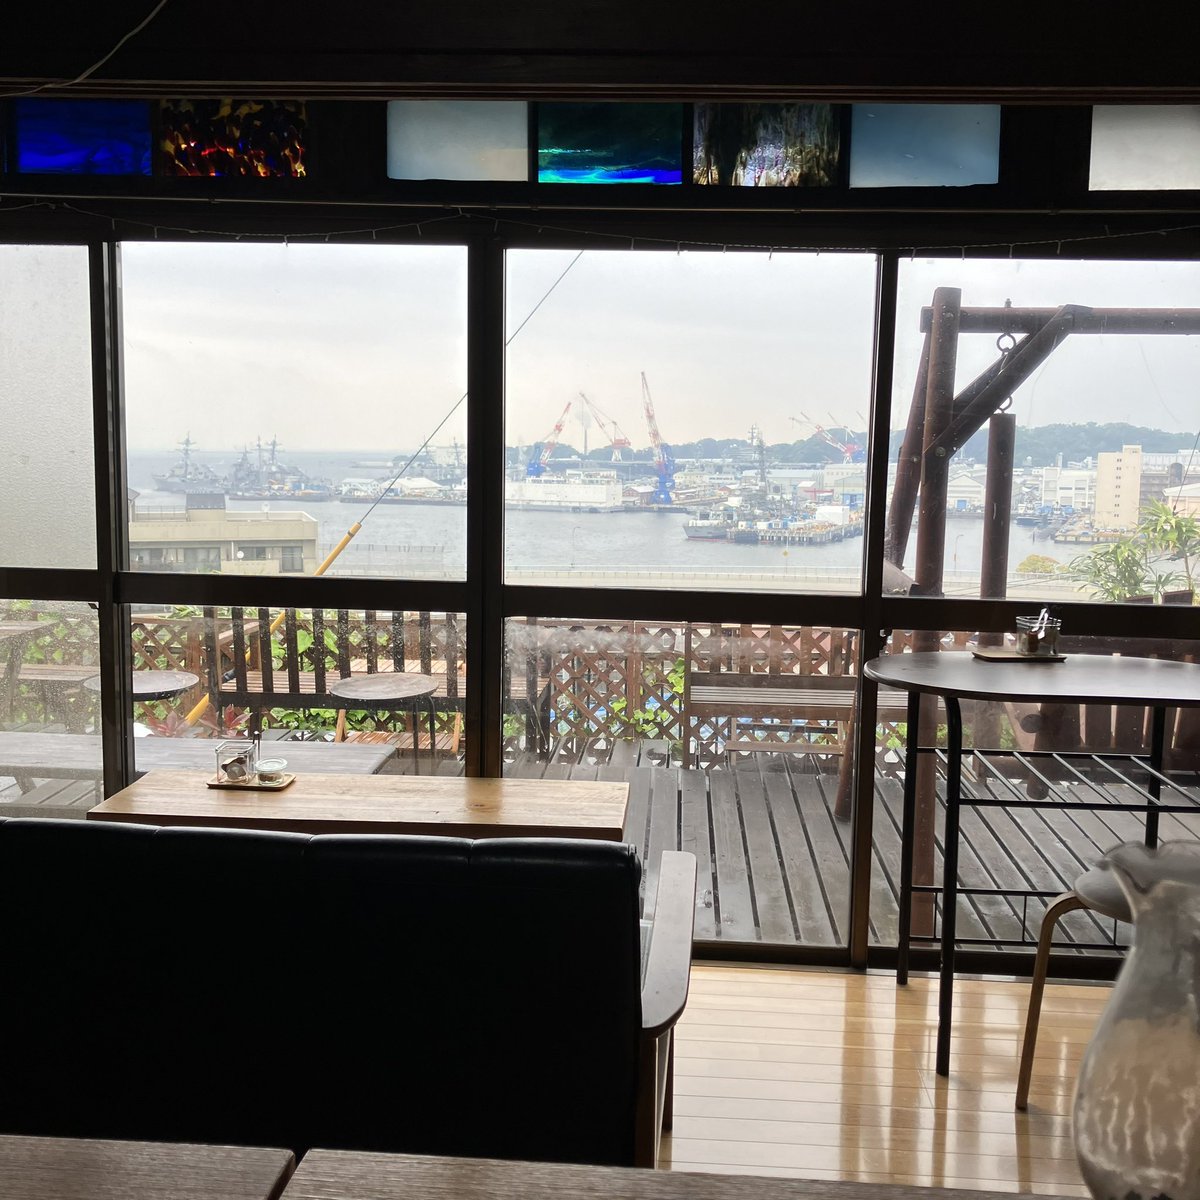 映画のロケ地に「ロケ地マップ🗺️」をお届けに✨ 掲示しているので是非ご覧ください🎞️ そこで食べたランチは #手しごとカフェ 新メニューロコモコ（コーヒー付き）1100円😋 雨の景色も風情がある横須賀の軍港です⚓️ #横須賀　#カフェ　#映画